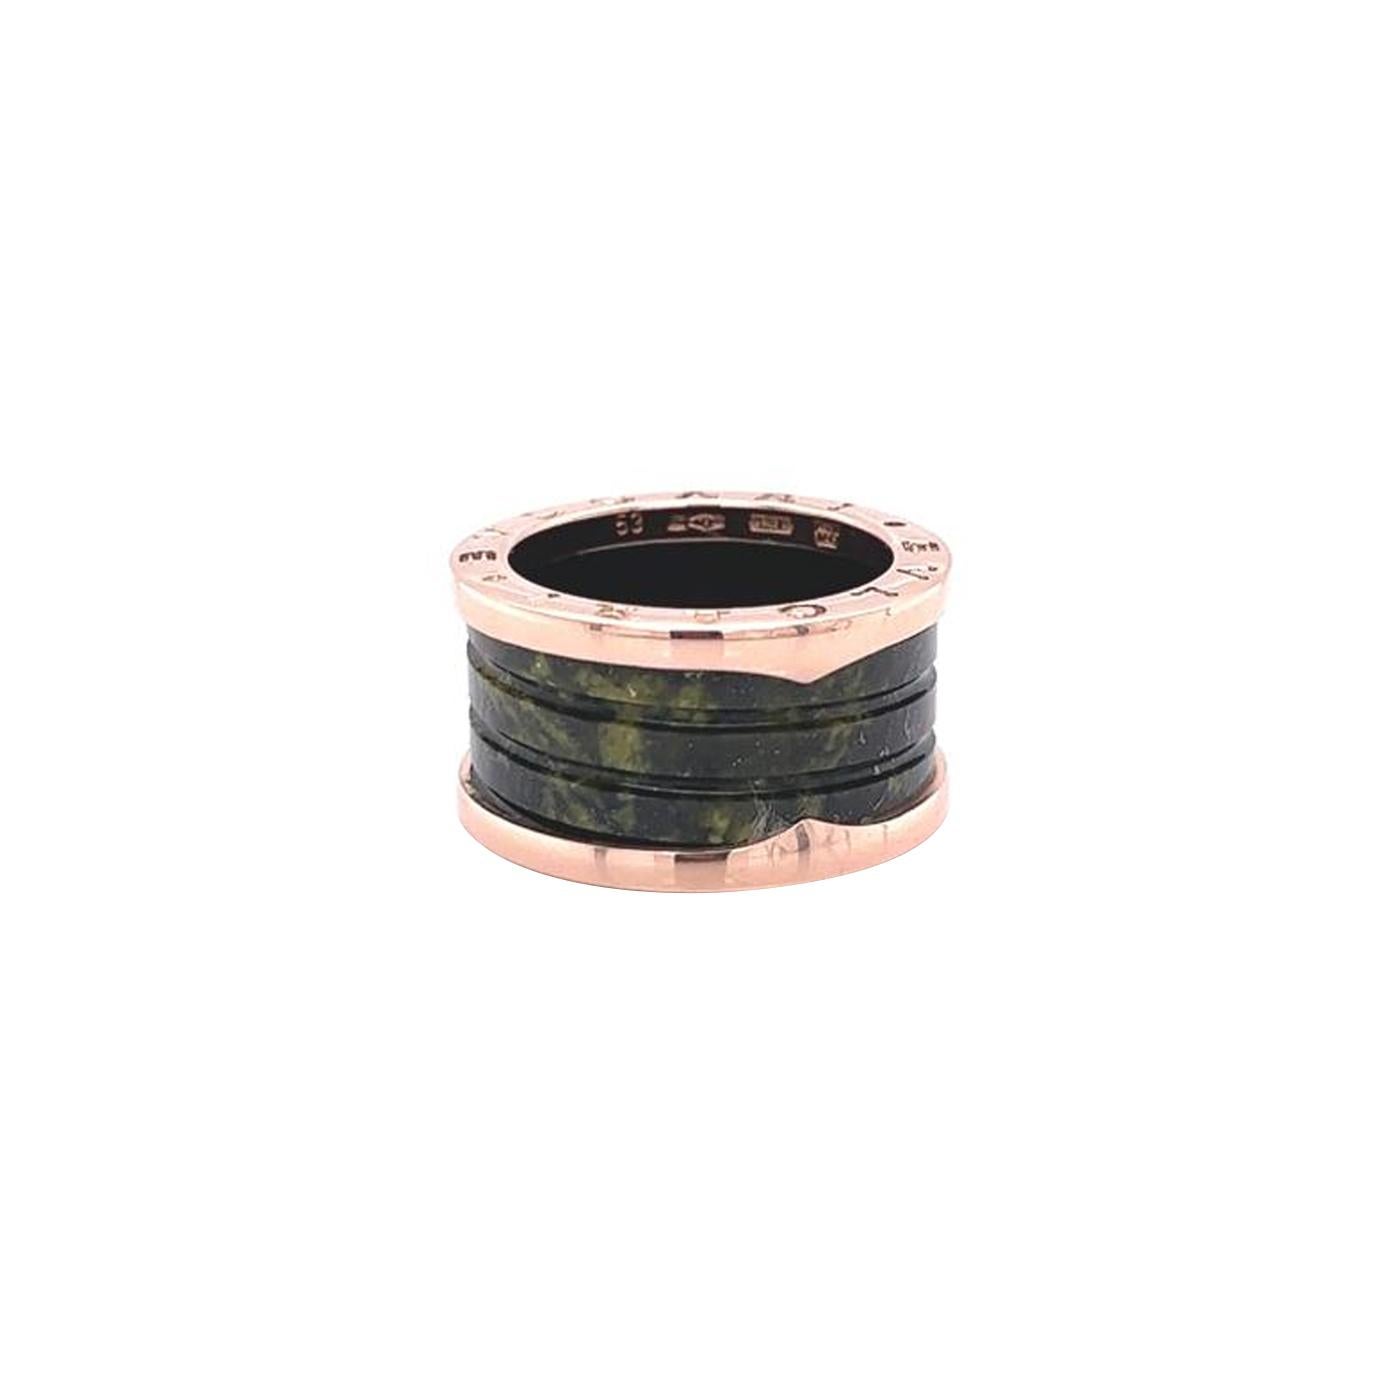 Einzigartig und modern ist dieser charmante B.Zero1 Ring aus einer der ikonischen Kollektionen von Bvlgari. Der Ring ist aus 18 Karat Roségold gefertigt und besteht aus 4 Bändern. Inspiriert vom Kolosseum, vereint dieser Ring eine außergewöhnliche